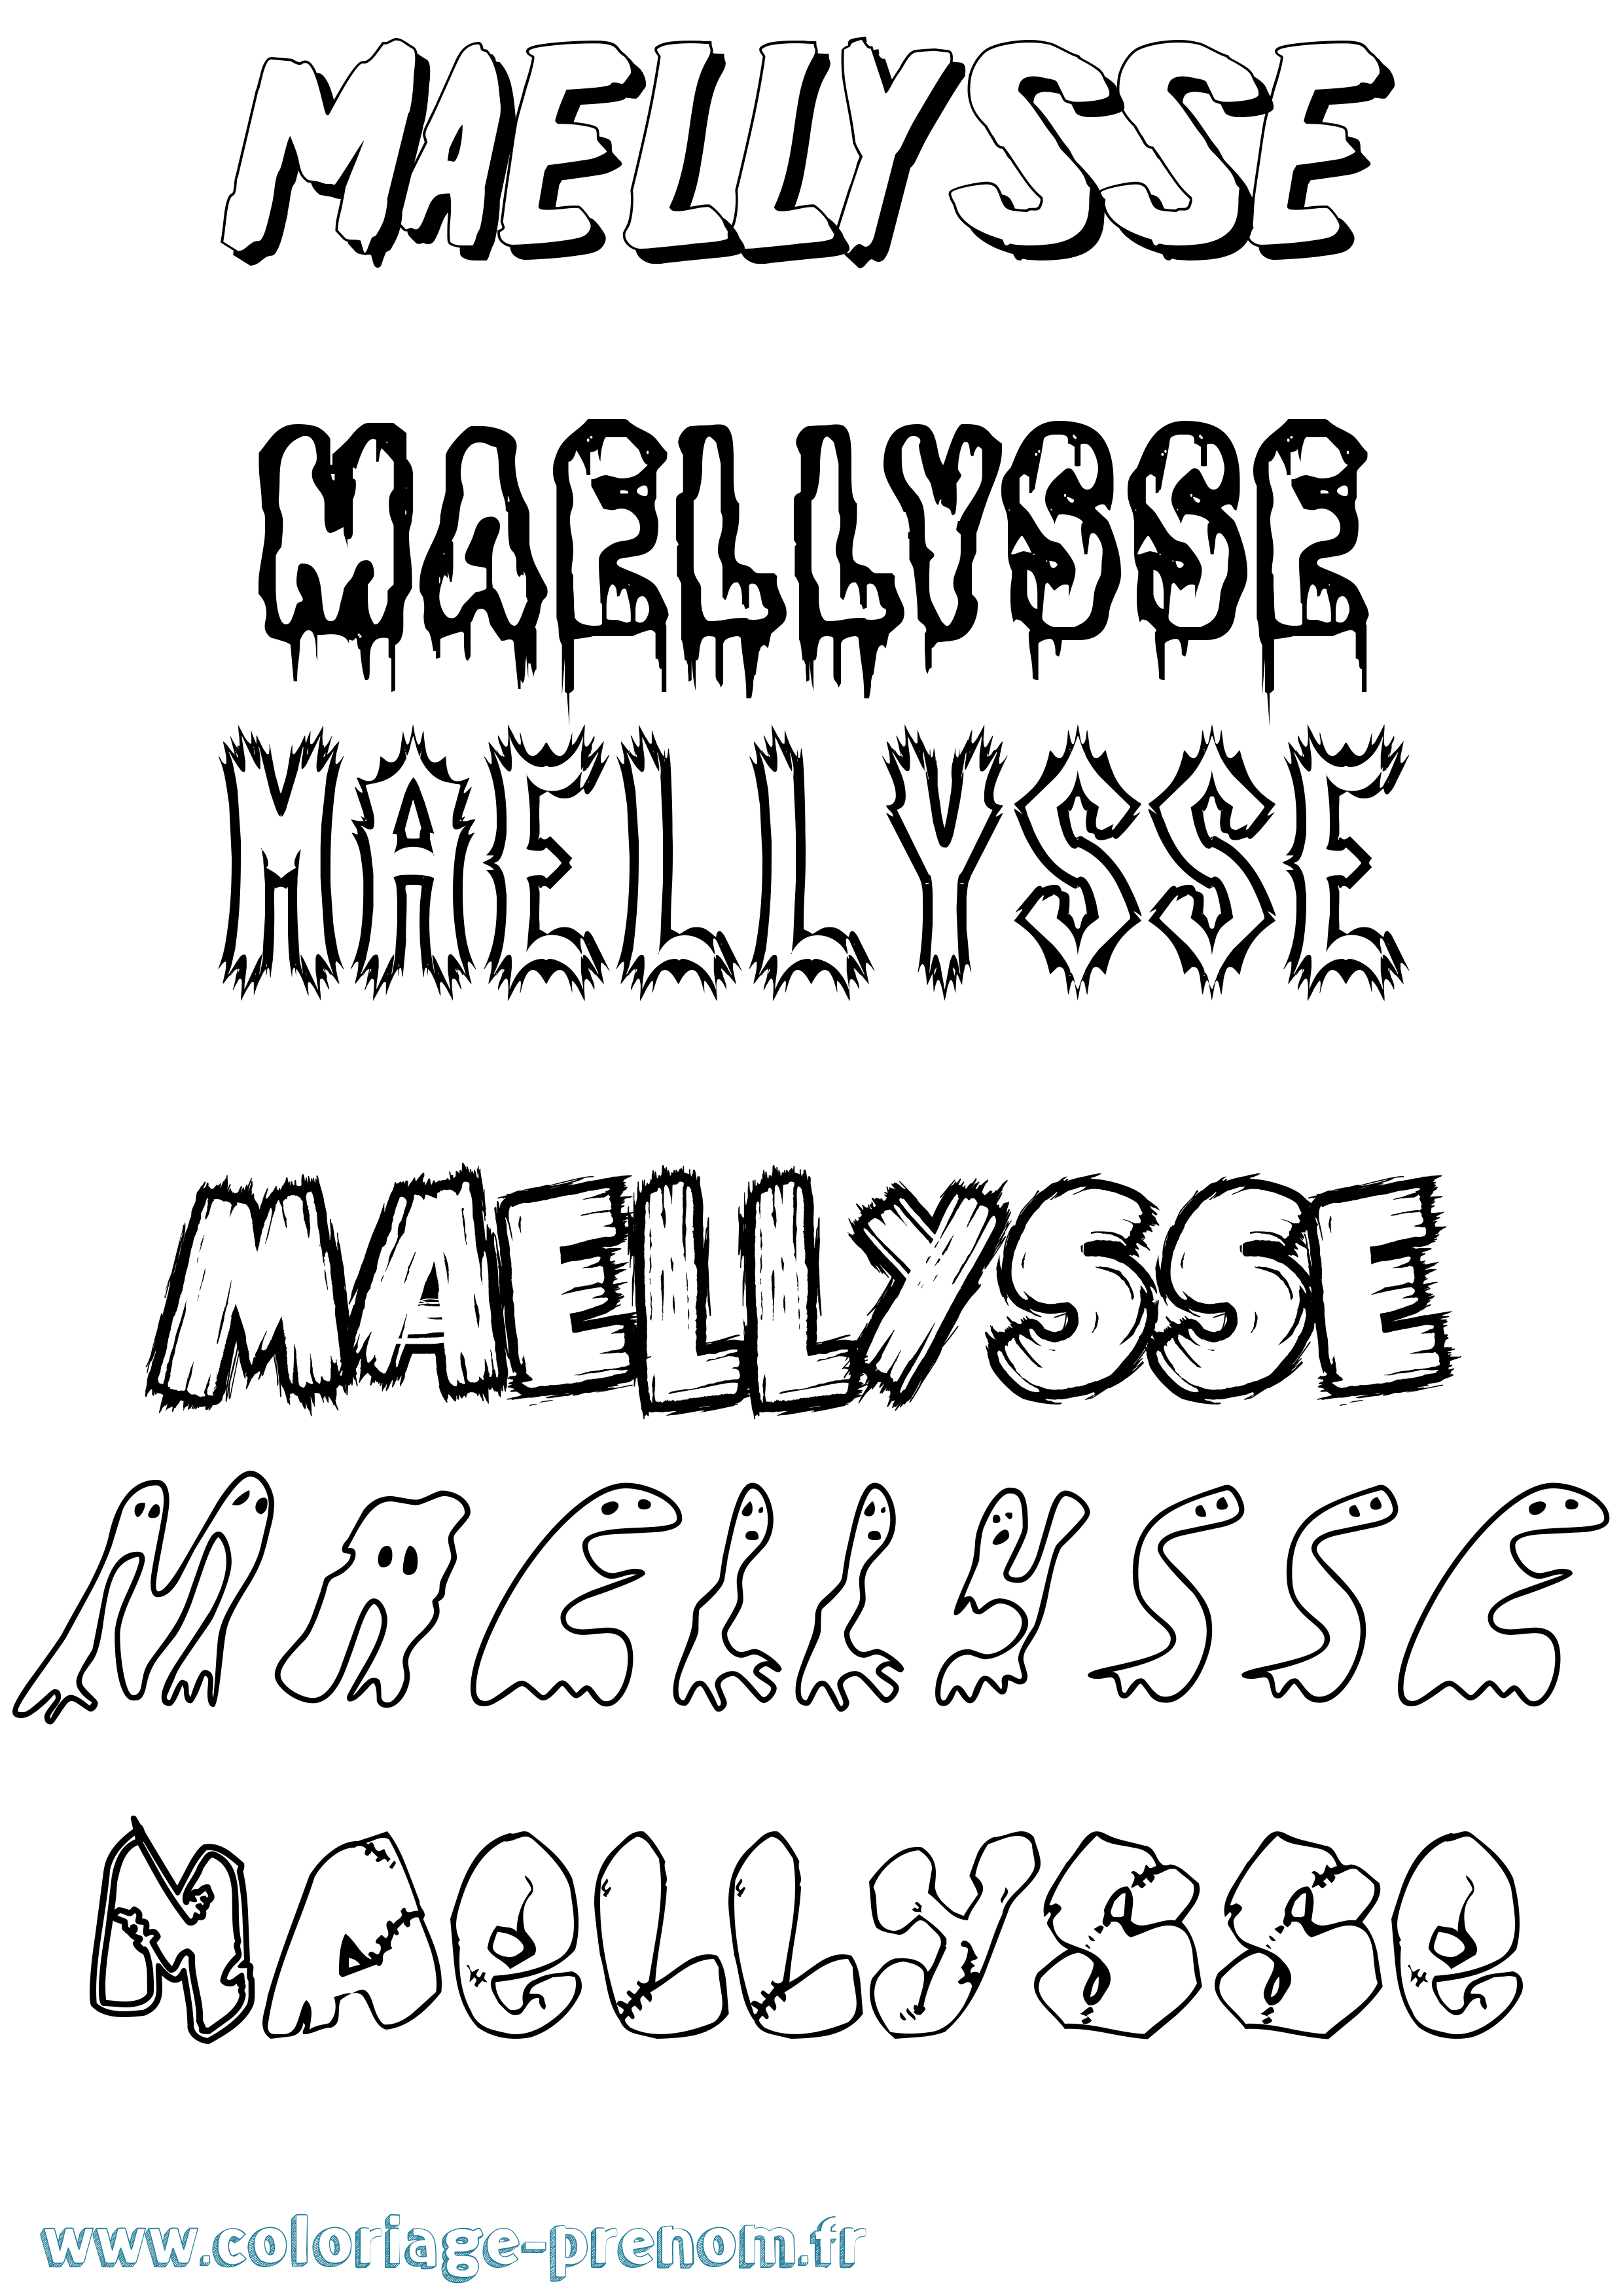 Coloriage prénom Maellysse Frisson